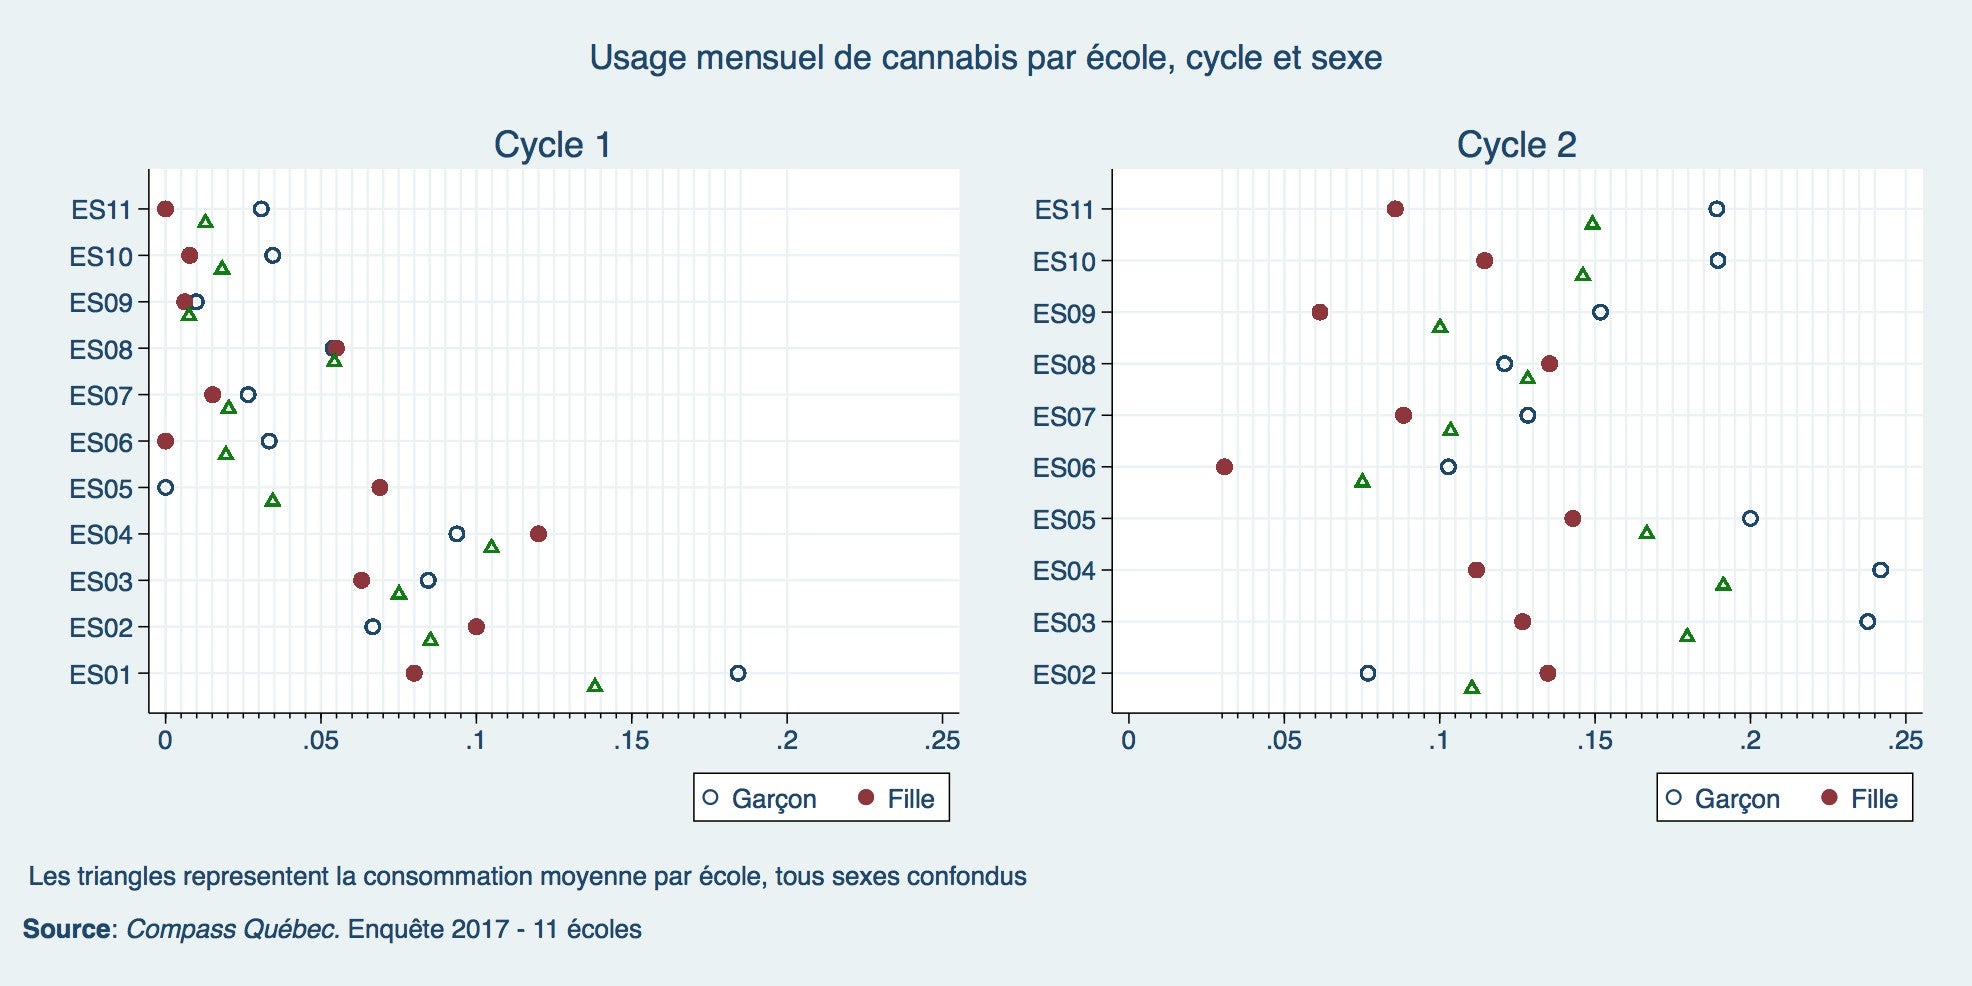 Usage mensuel de cannabis : proportion d’utilisateurs par école selon le cycle et le genre